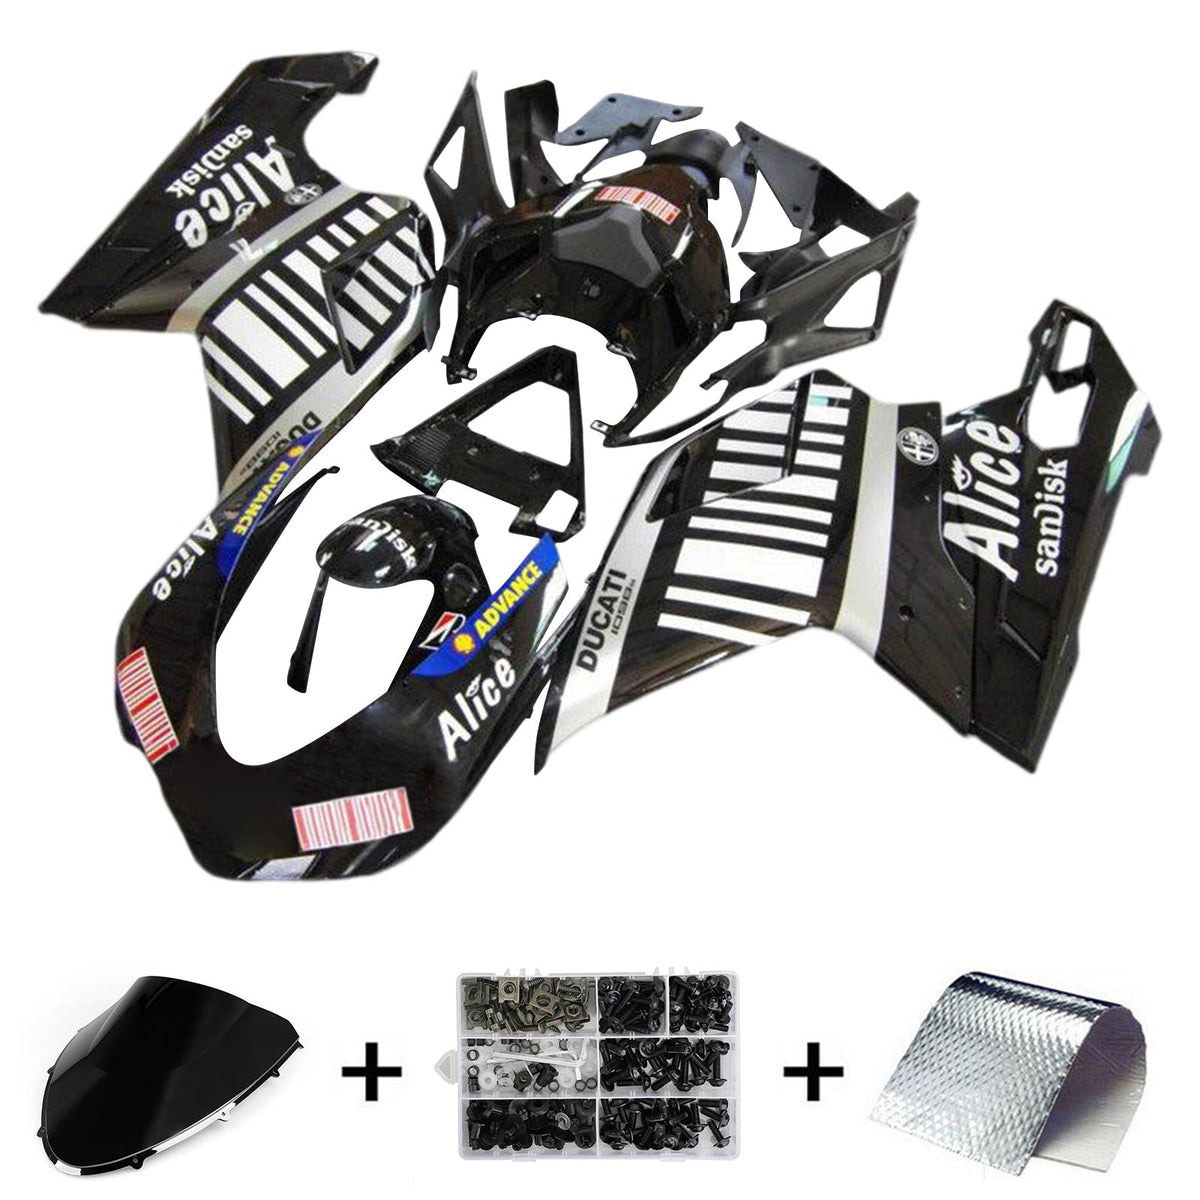 Amotopart 2007-2012 Ducati 1098 1198 848 Black&White Fairing Kit